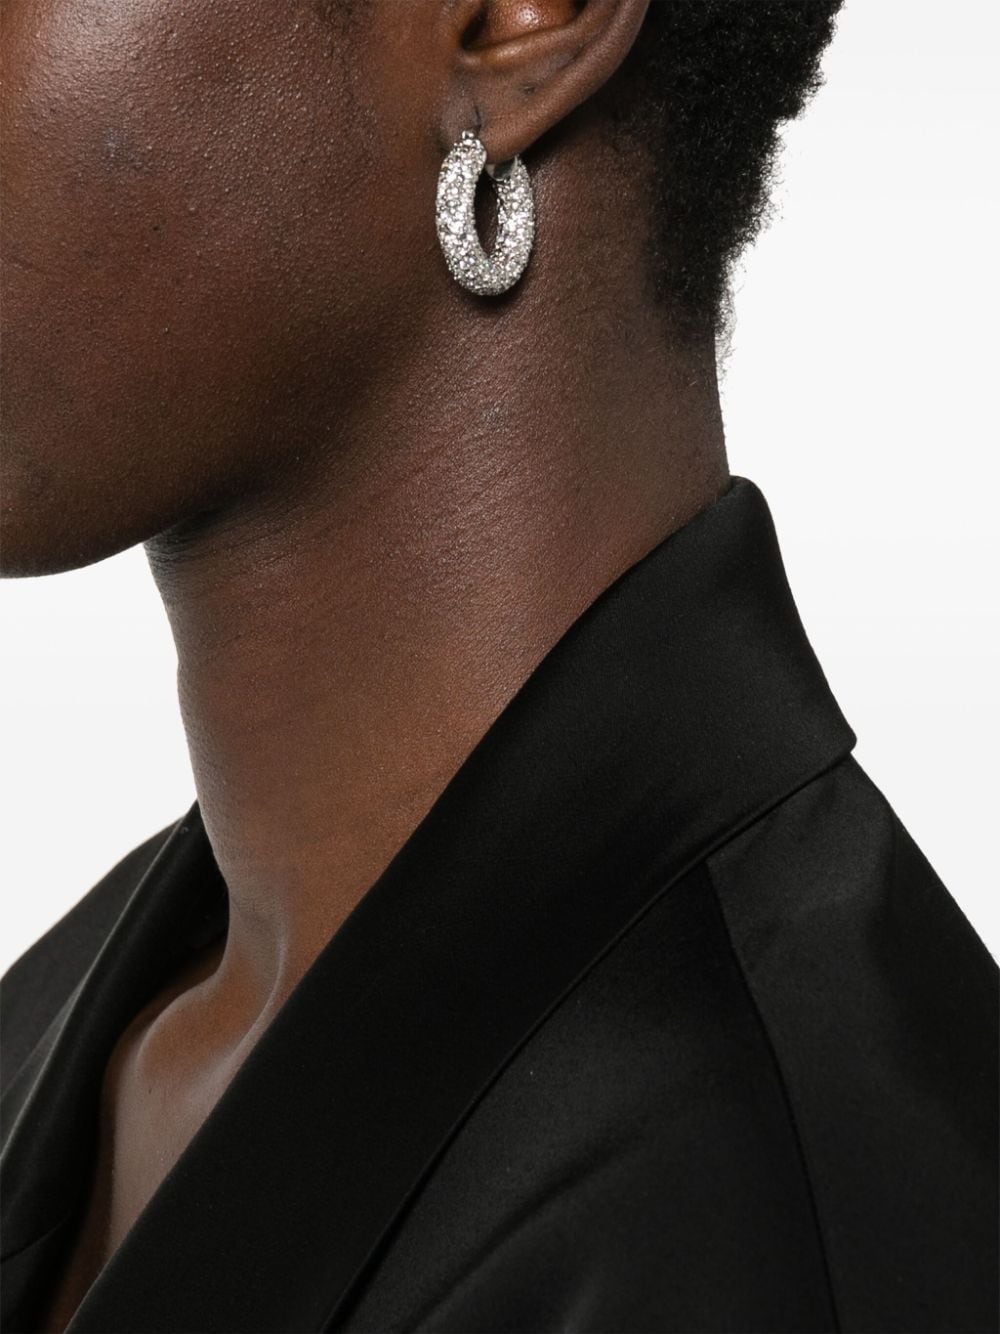 rhinestone-embellished hinged hoop earrings - 2